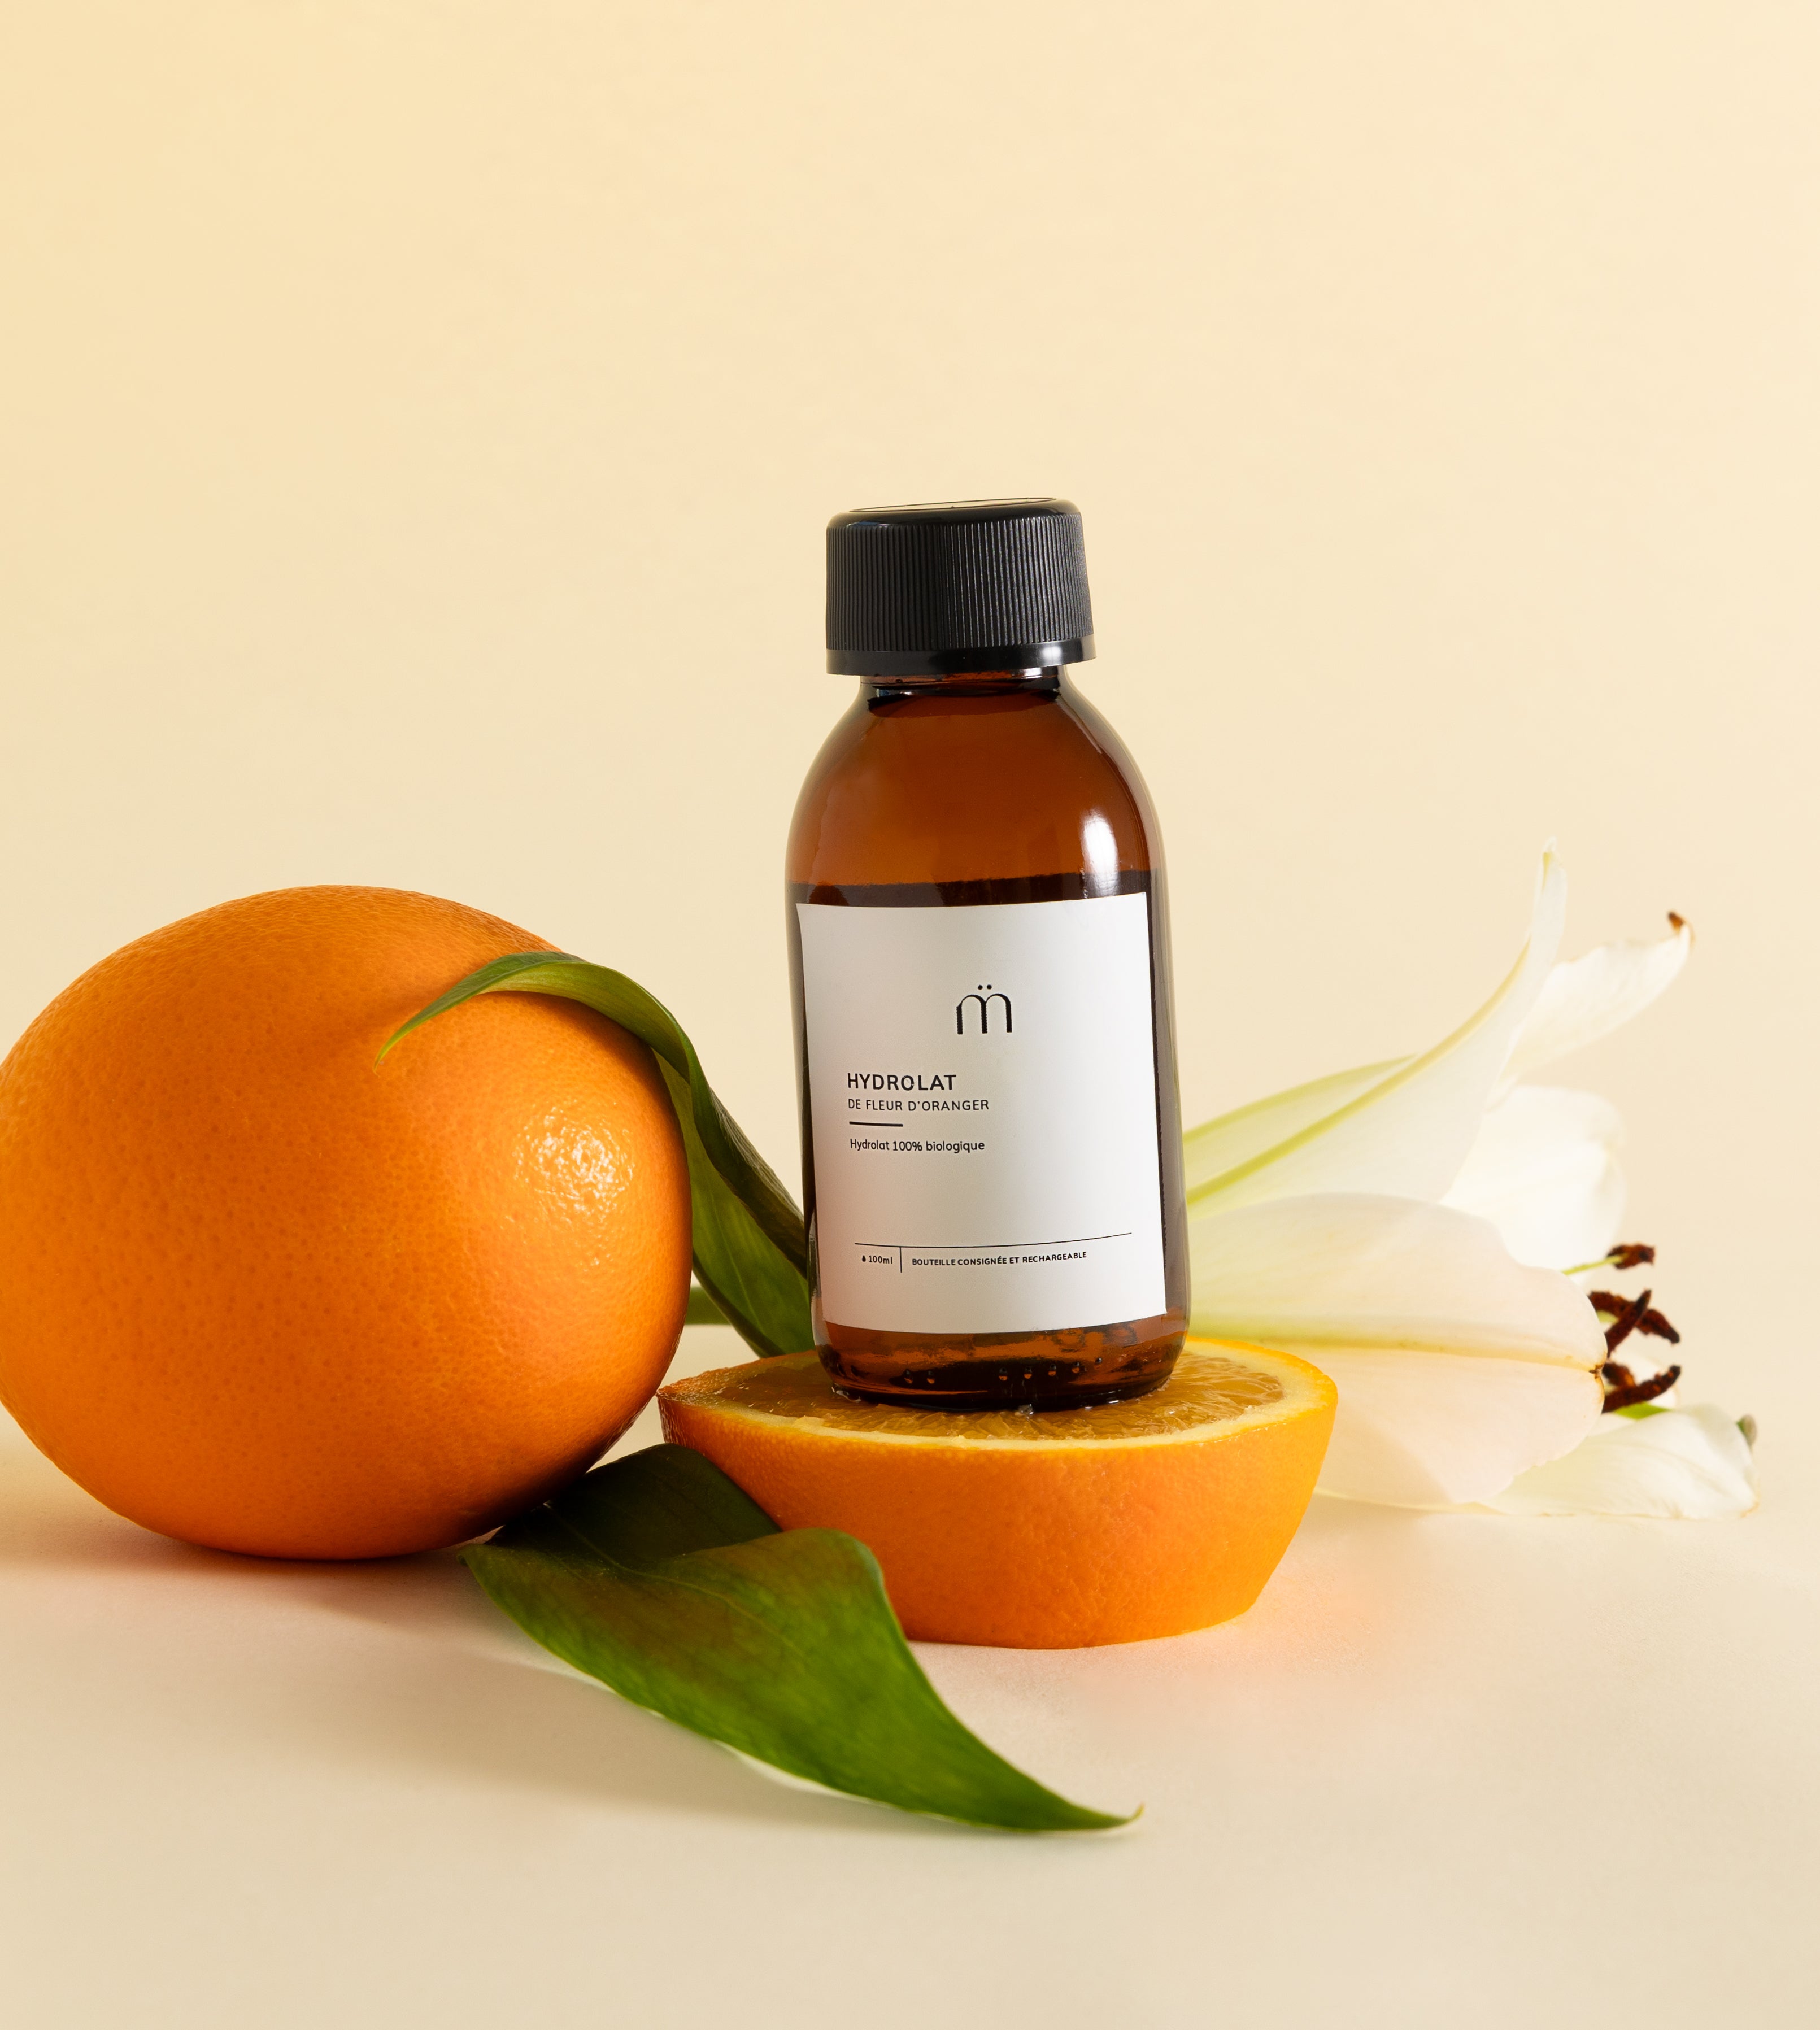 Hydrolat fleur d'oranger, eau florale pour la peau